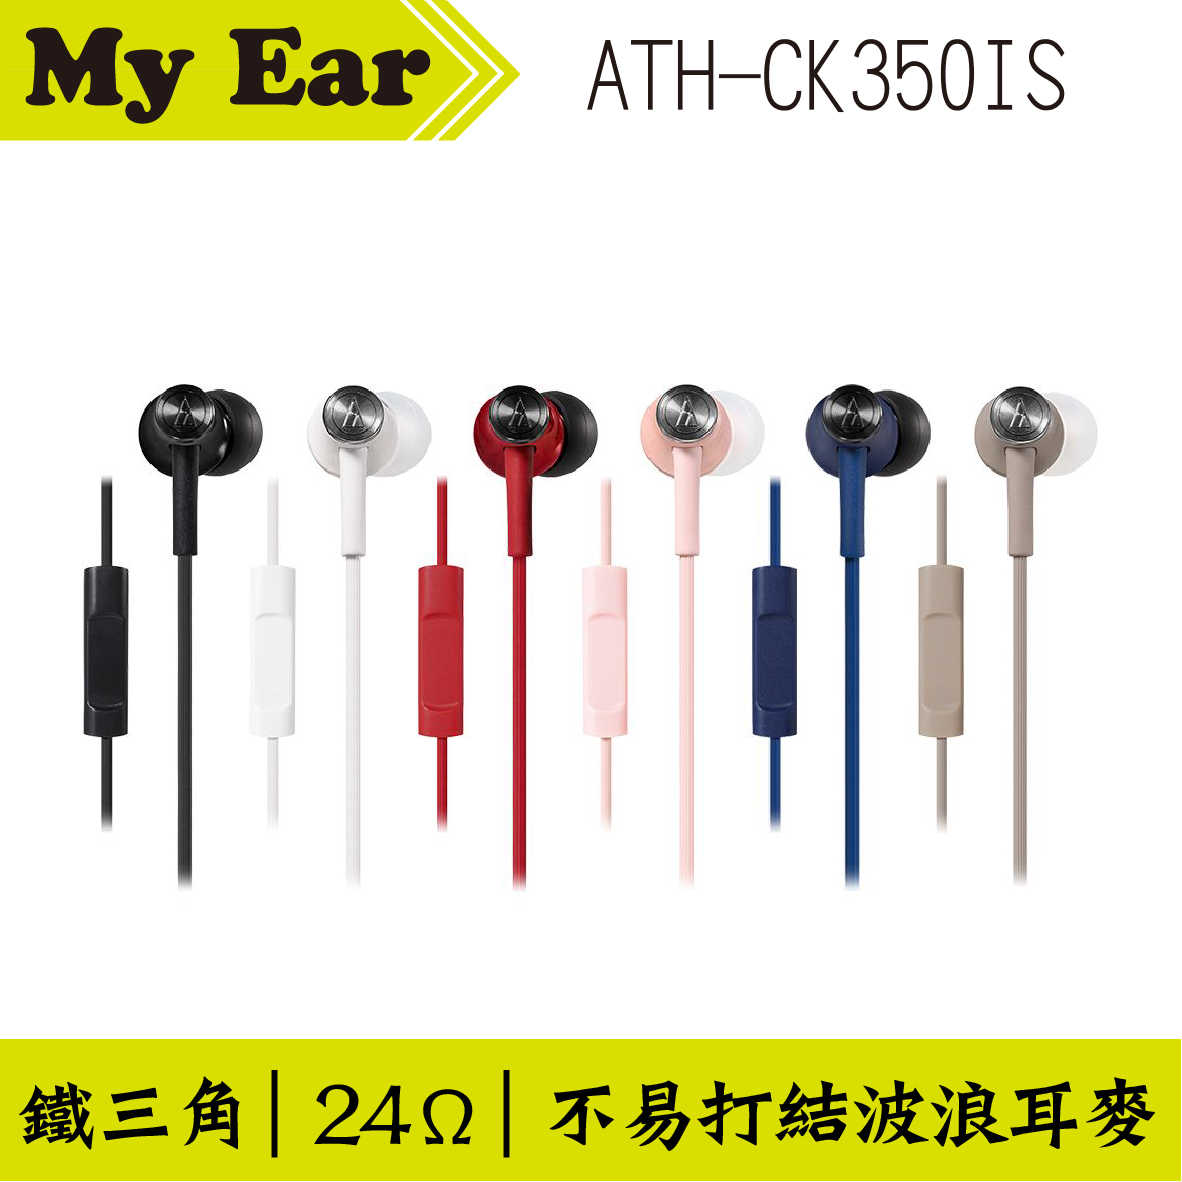 鐵三角 ATH-CK350IS 耳機麥克風 黑色  | My Ear 耳機專門店